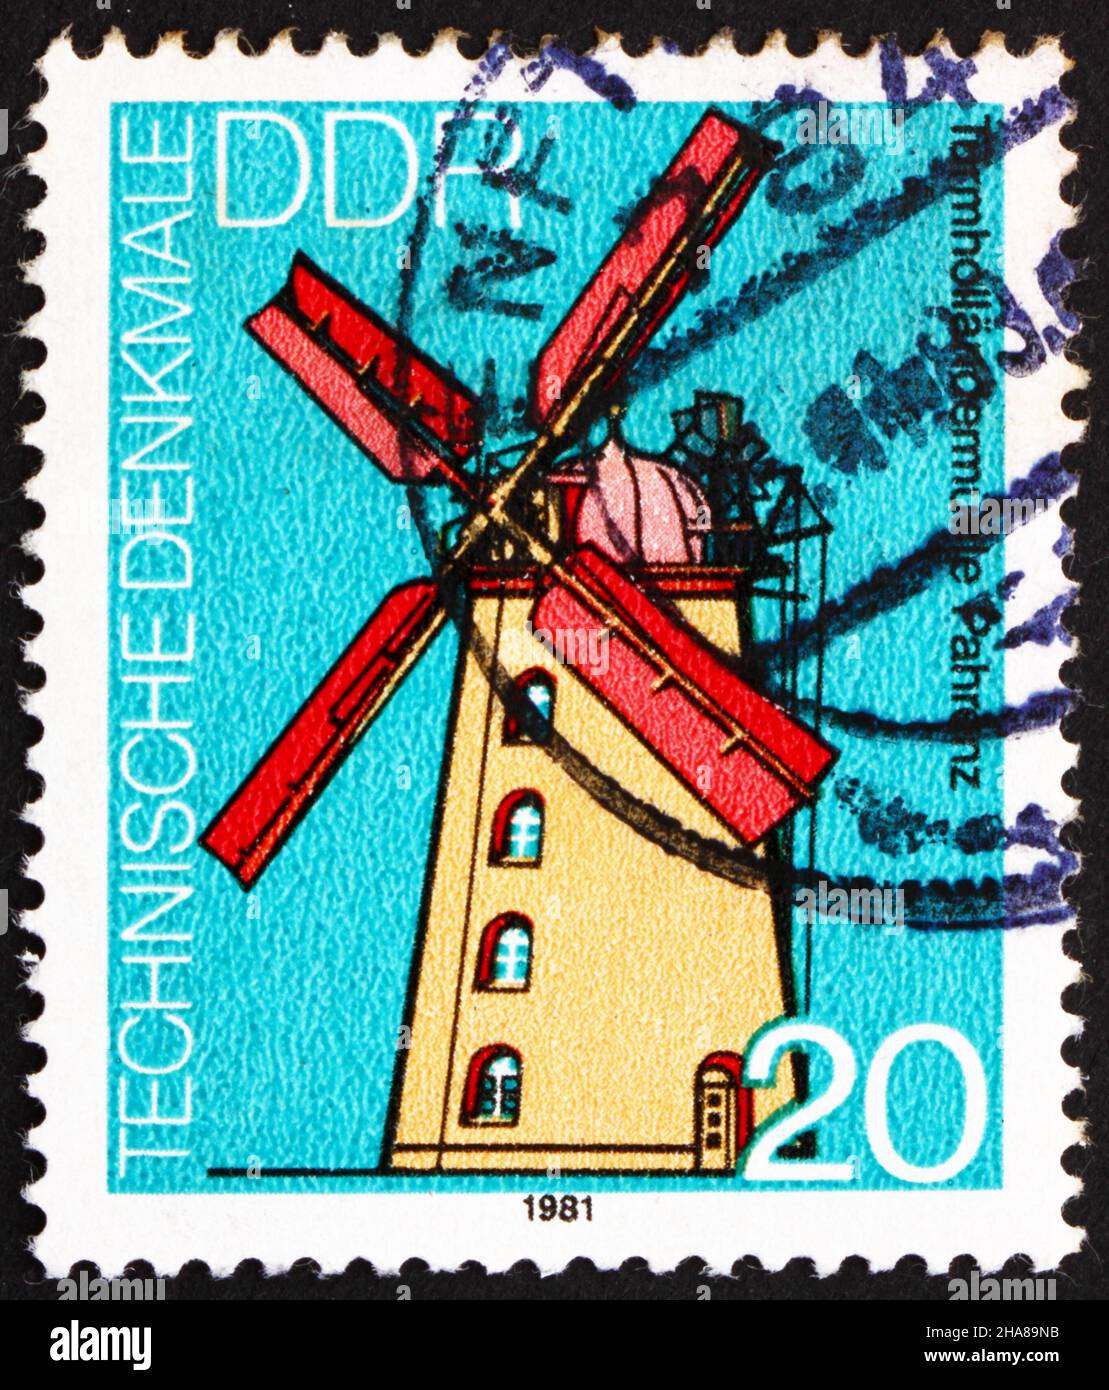 RDA - VERS 1981 : un timbre imprimé en RDA montre Windmill, Pahrenz, Allemagne, vers 1981 Banque D'Images